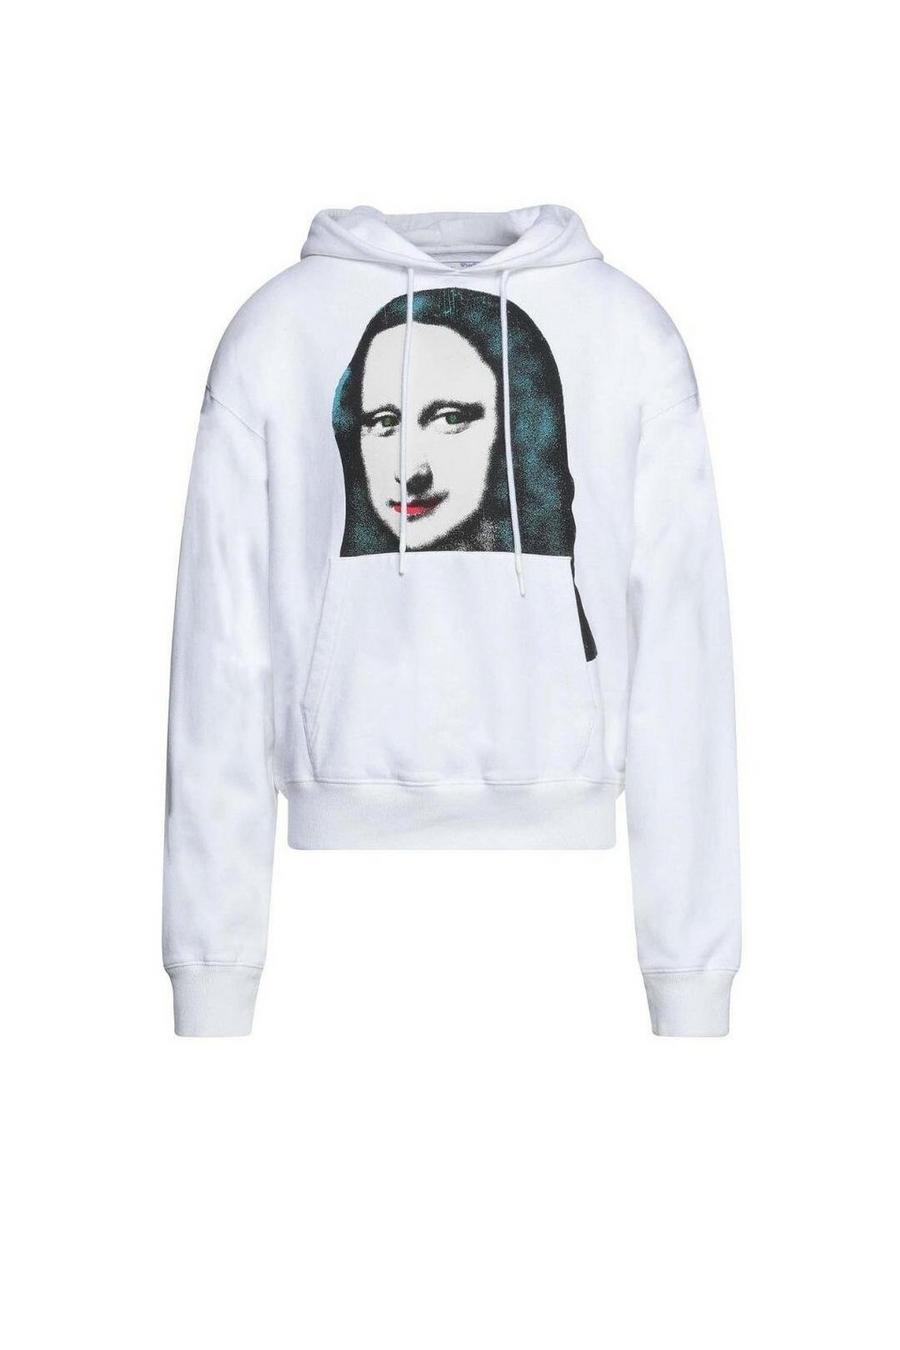 Mona Lisa Print Logo White Hoodie